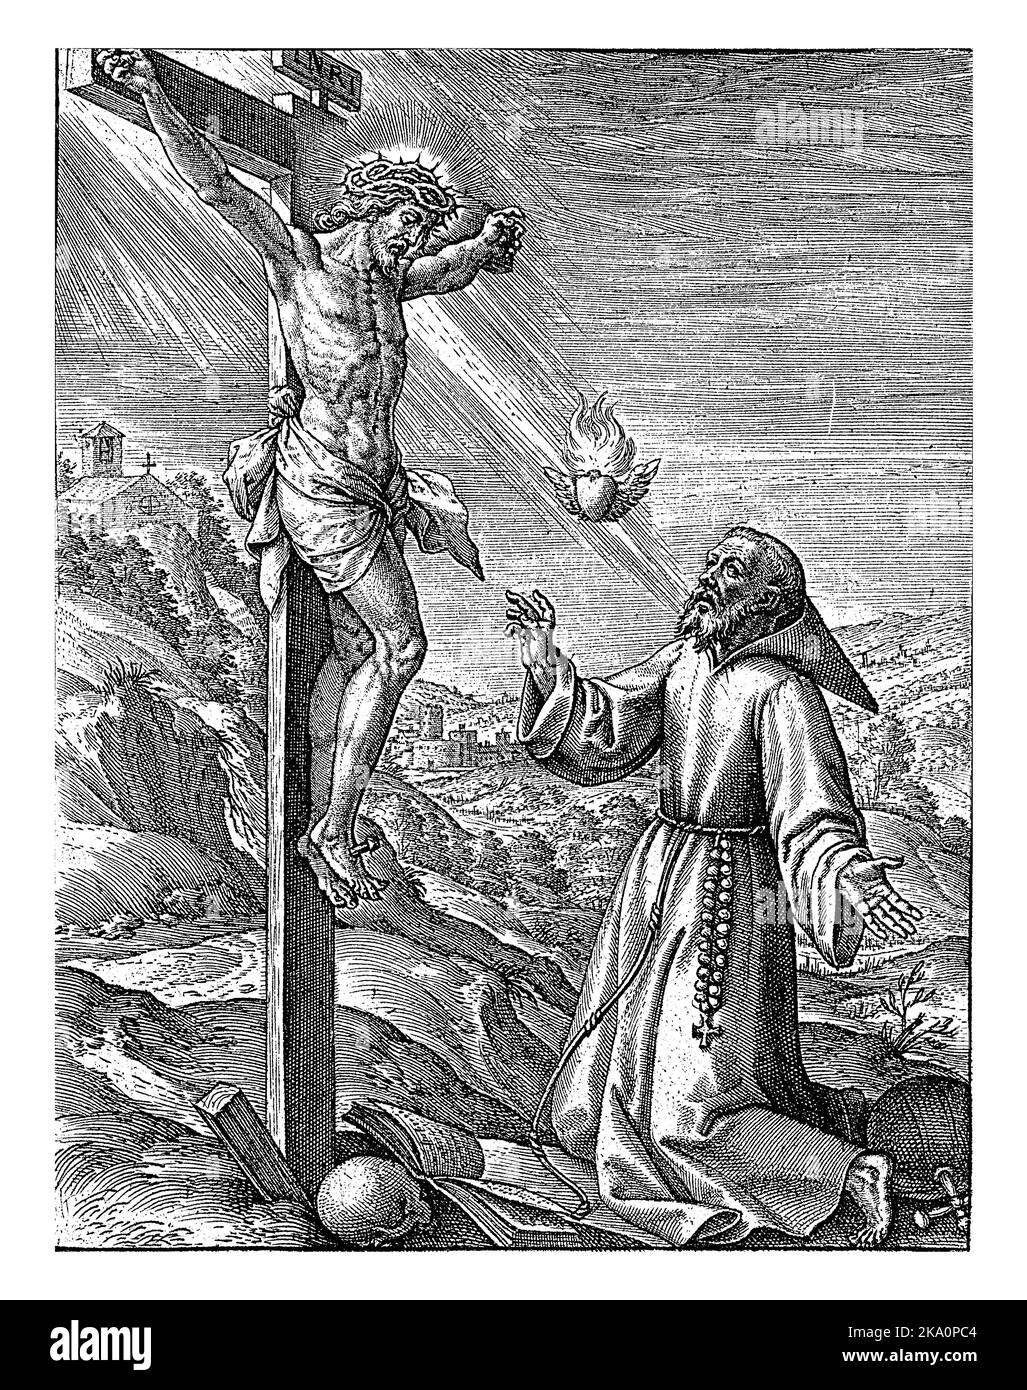 San Francesco d'Assisi davanti al Cristo crocifisso, Geronymus Wierix, 1563 - prima del 1619 H. Francesco d'Assisi inginocchiato davanti al Cristo crocifisso. A. Foto Stock